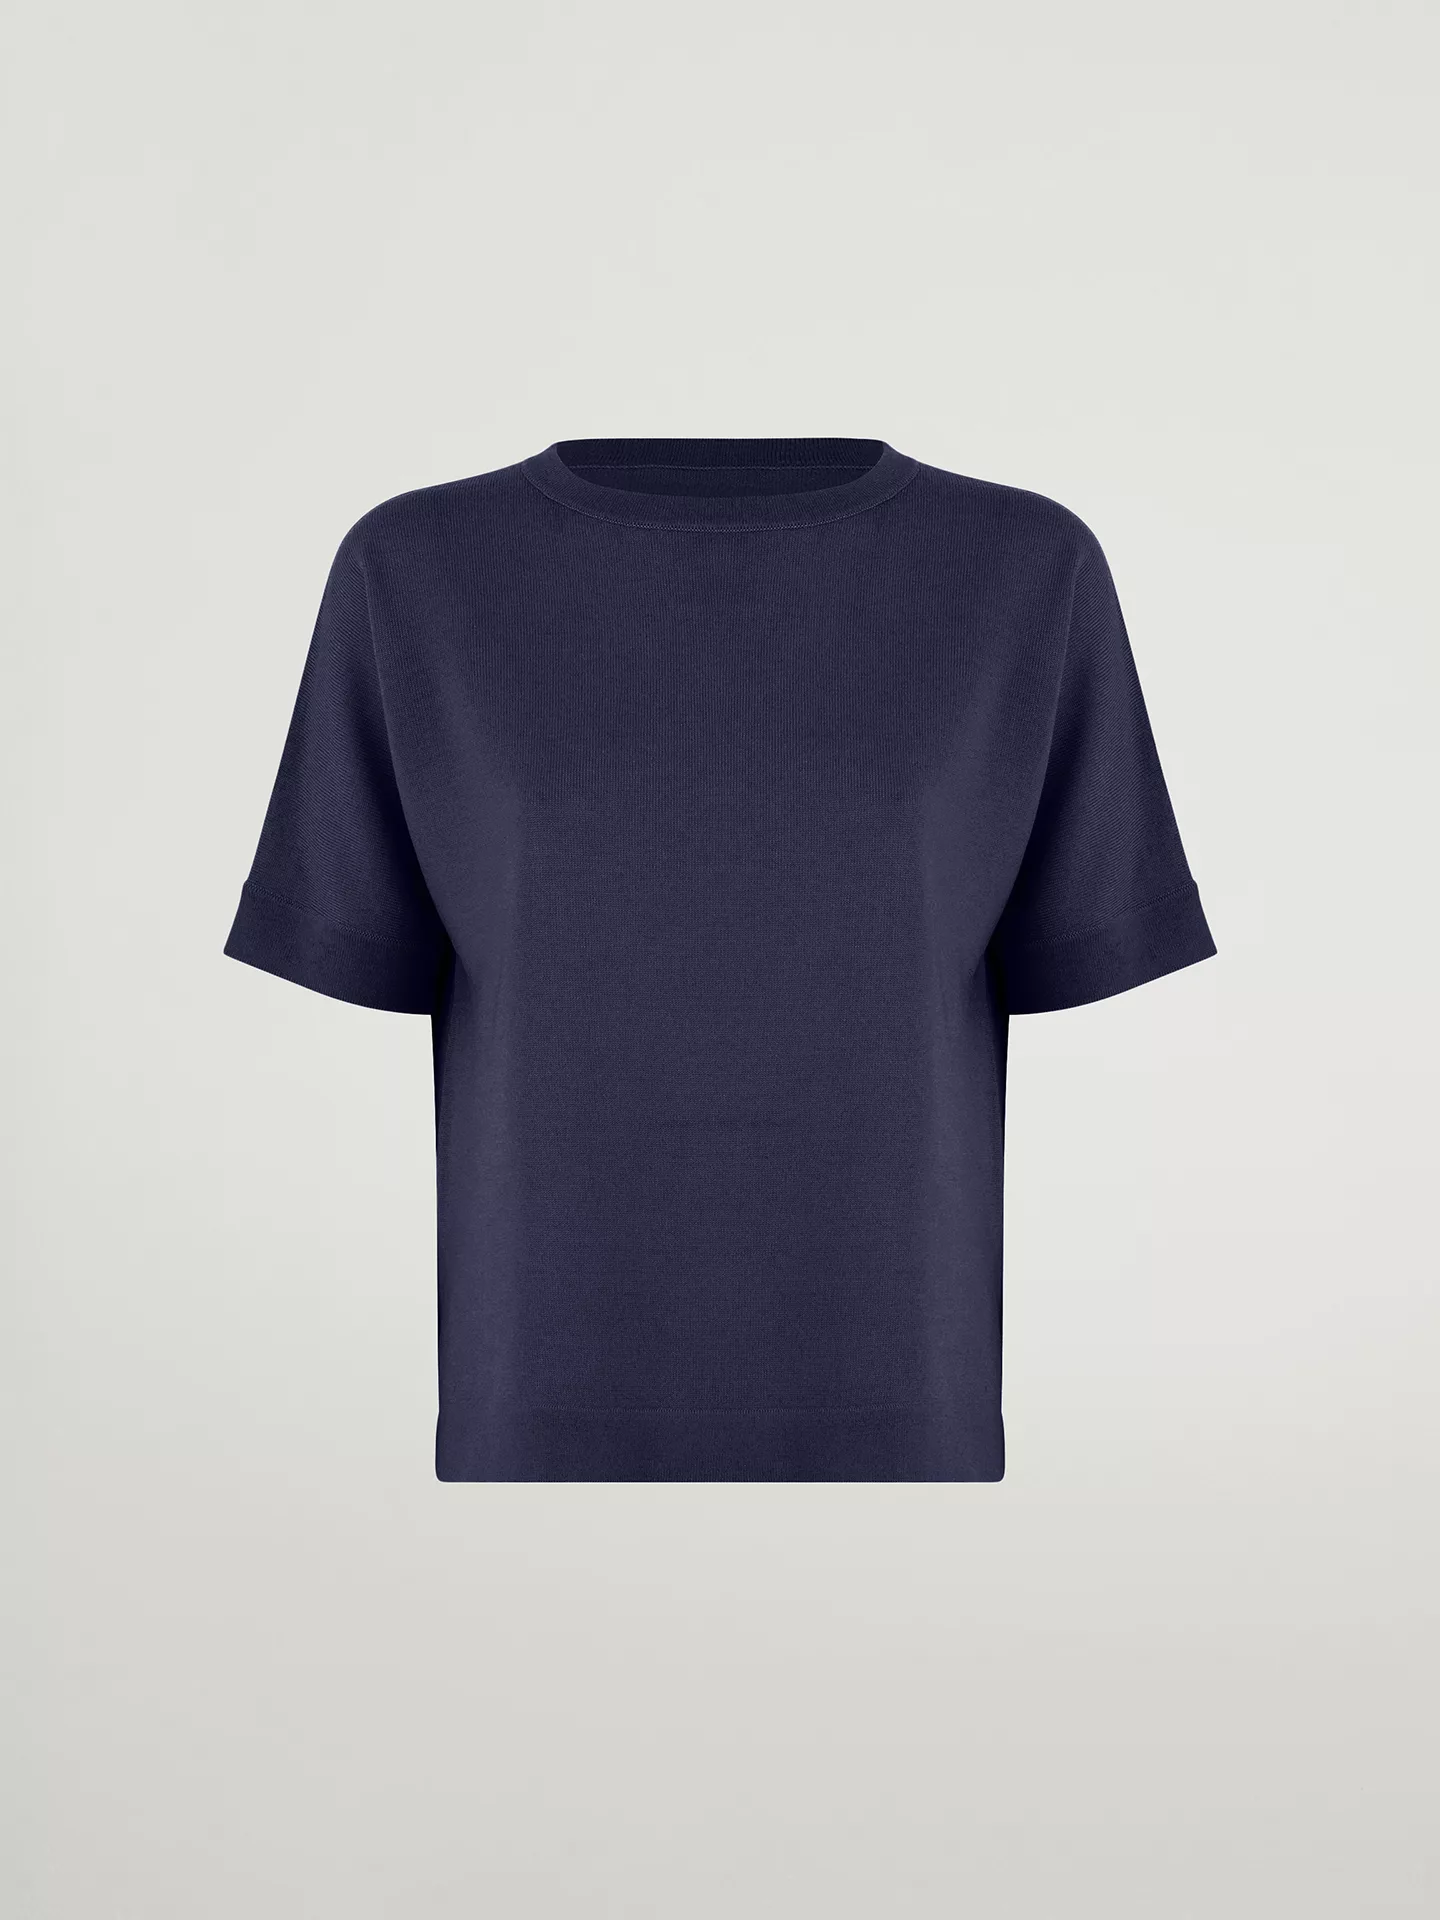 Wolford - Merino Blend Top Short Sleeves, Frau, saphire blue, Größe: L günstig online kaufen